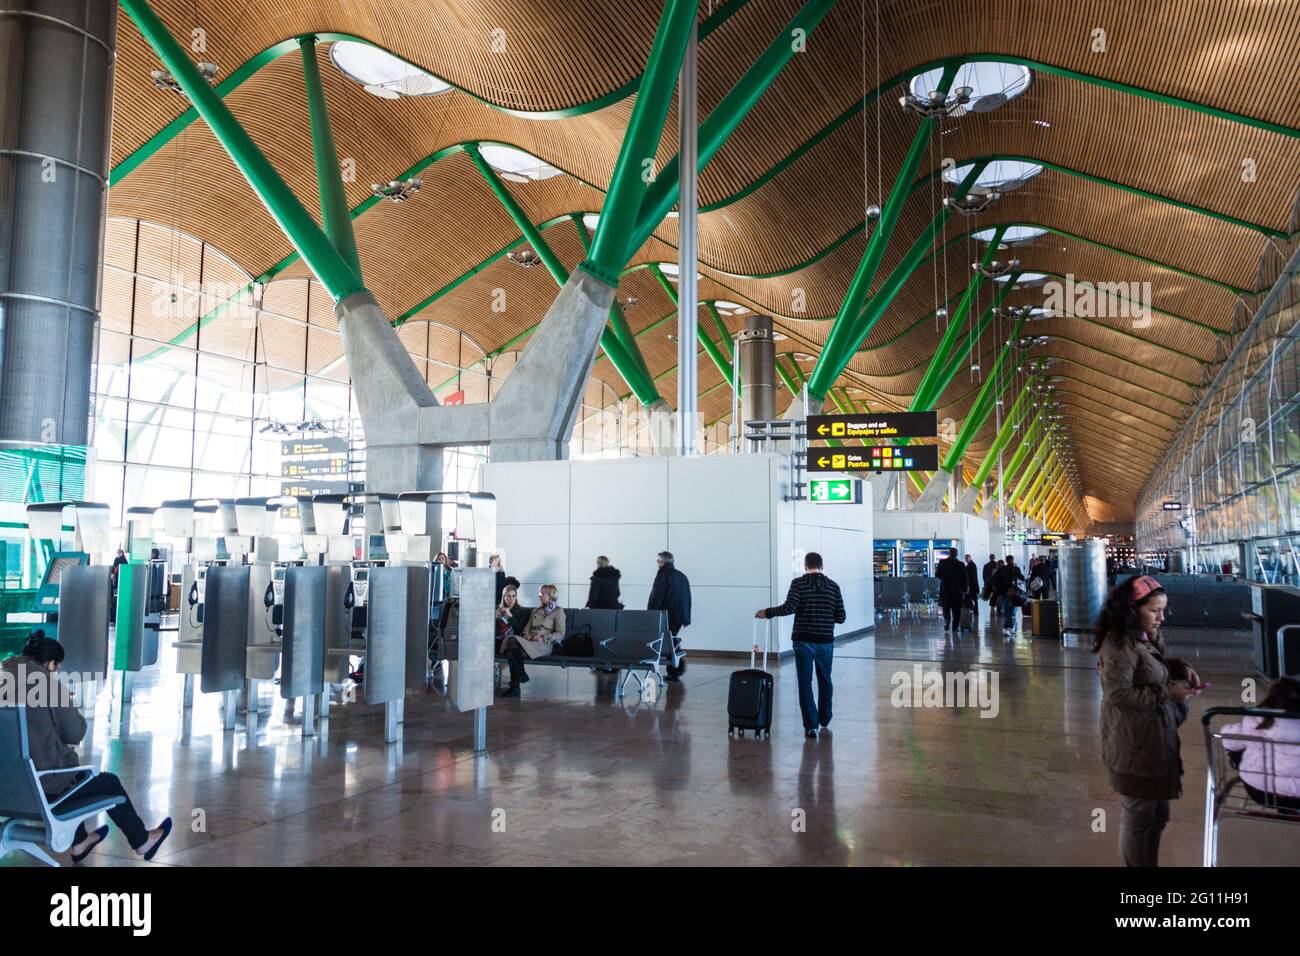 MADRID, SPANIEN - 26. JAN 2015: Inneneinrichtung eines Terminals im Flughafen Adolfo Suarez Madrid-Barajas. Stockfoto